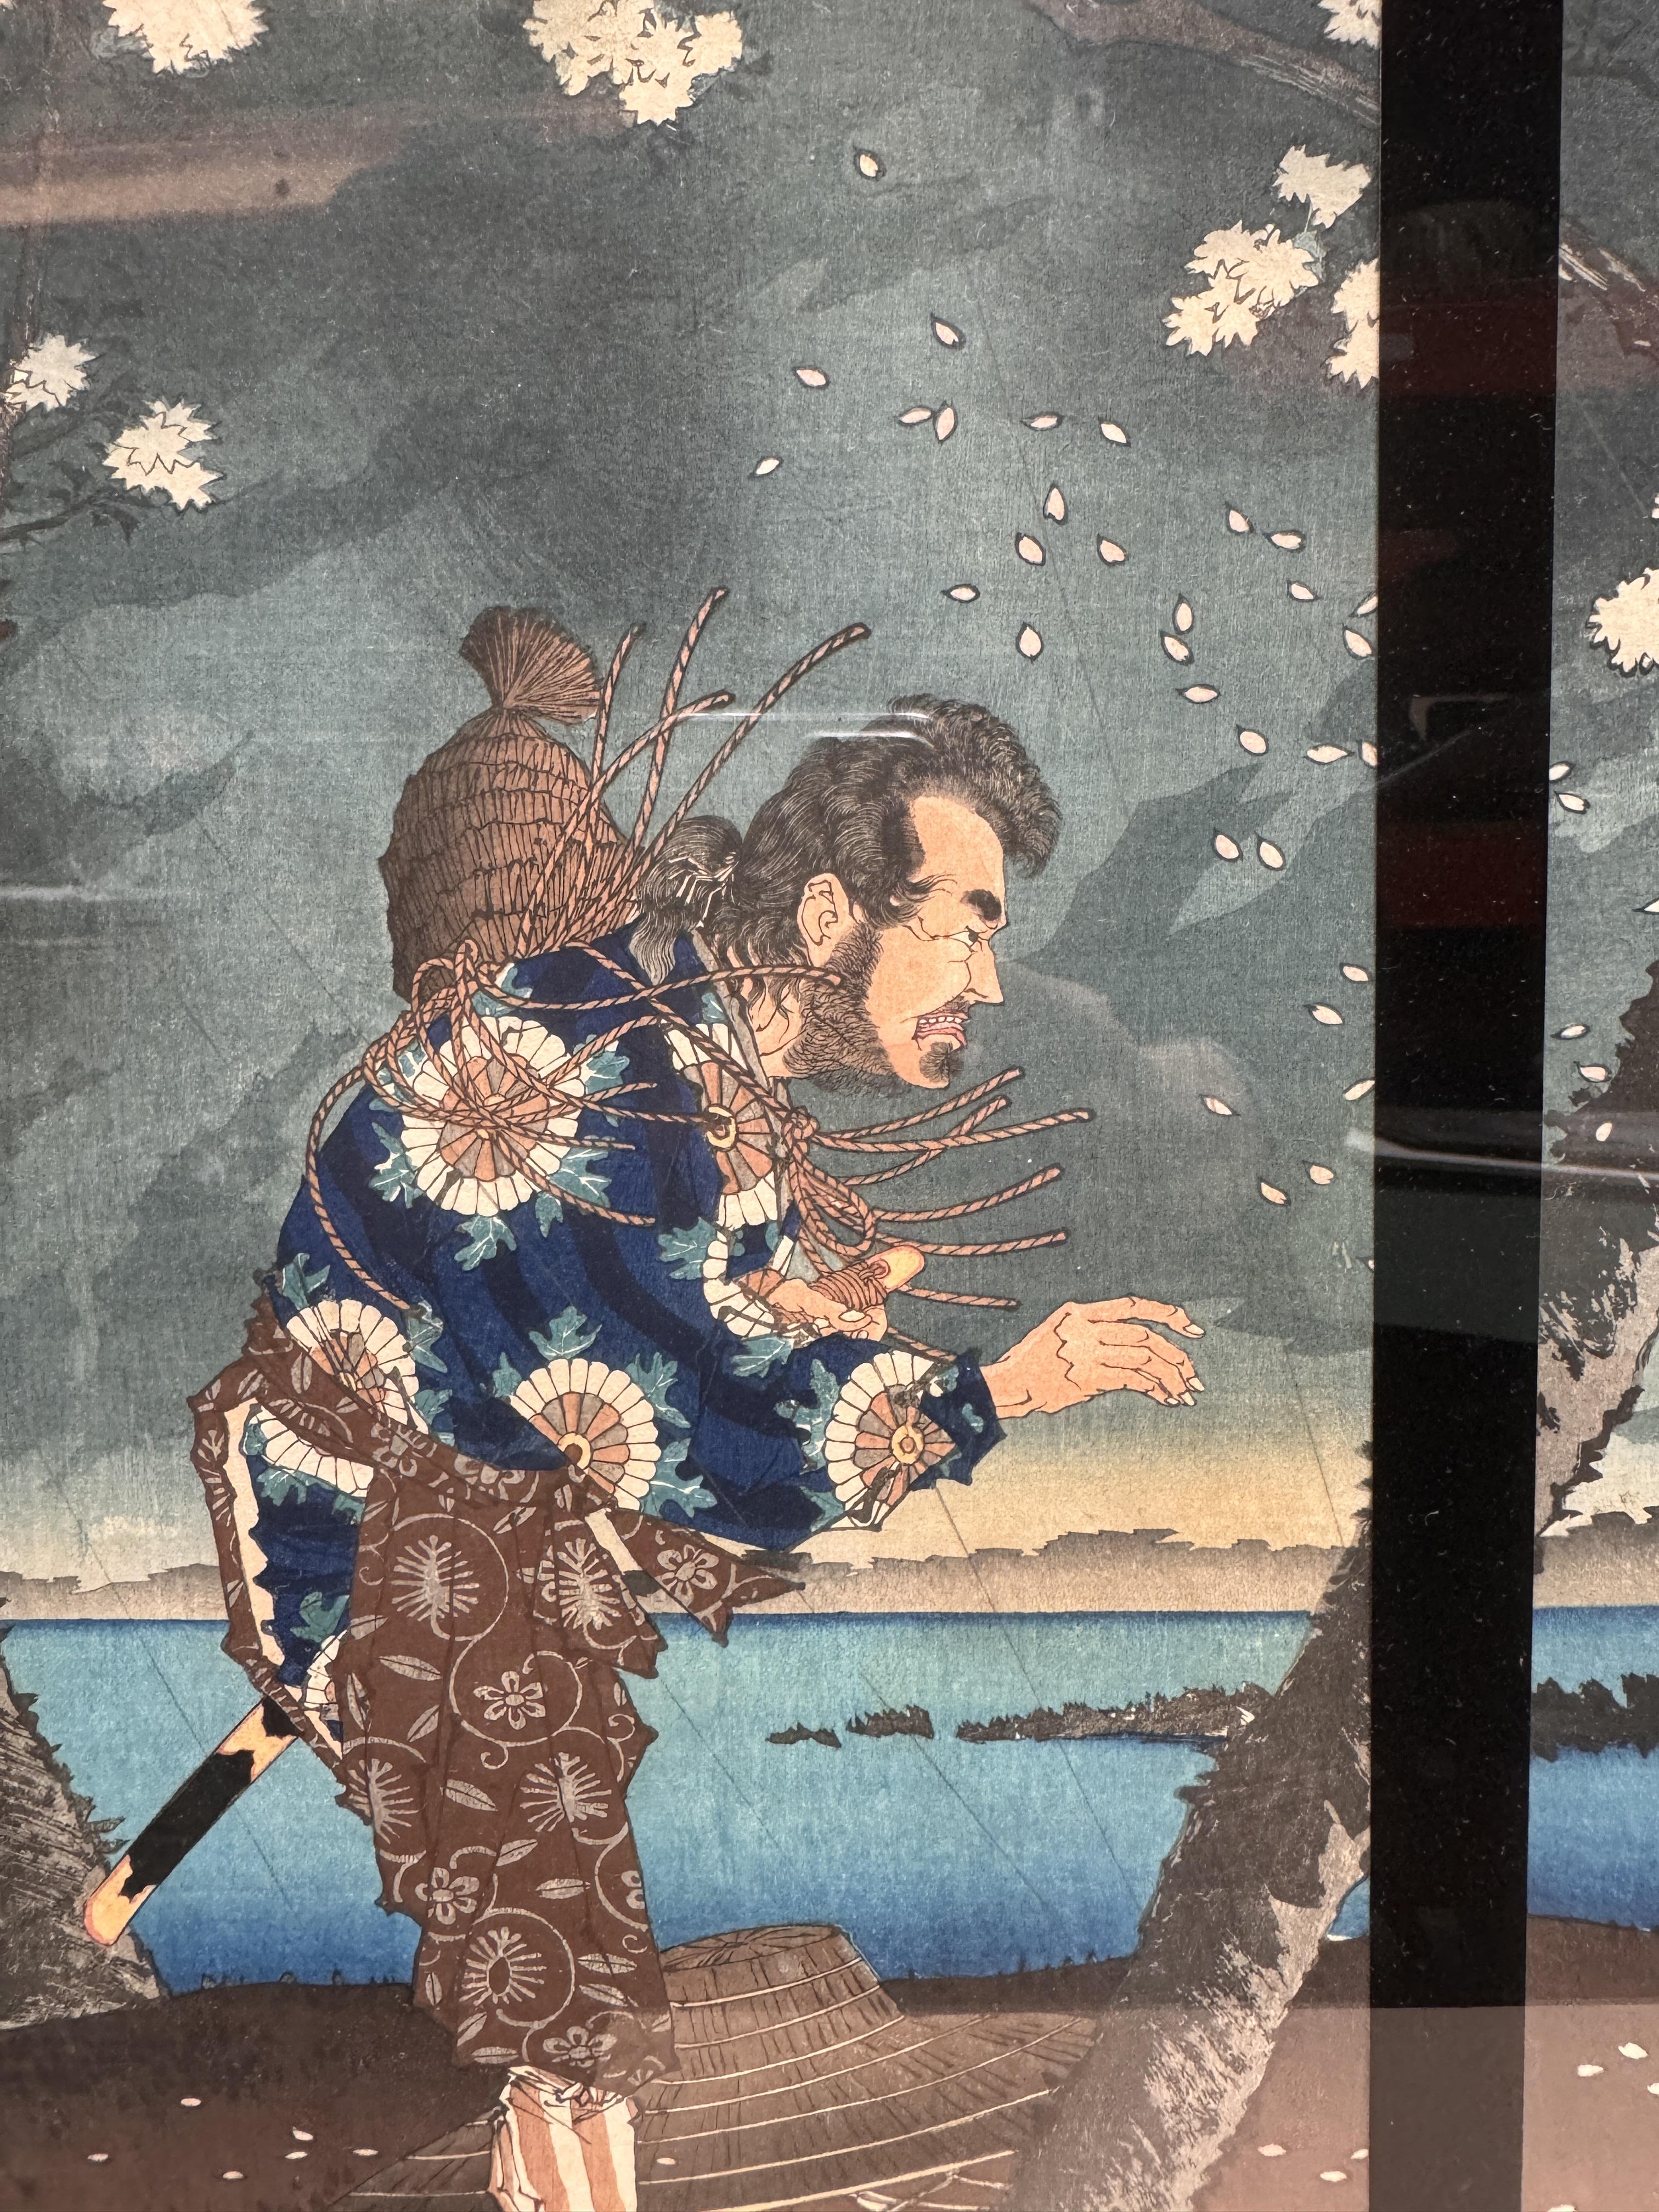 TSUKIOKA YOSHITOSHI (1797 – 1858), MIYAGAWA SHUNTEI (1873 – 1914) Two Japanese woodblock print tript - Image 13 of 23